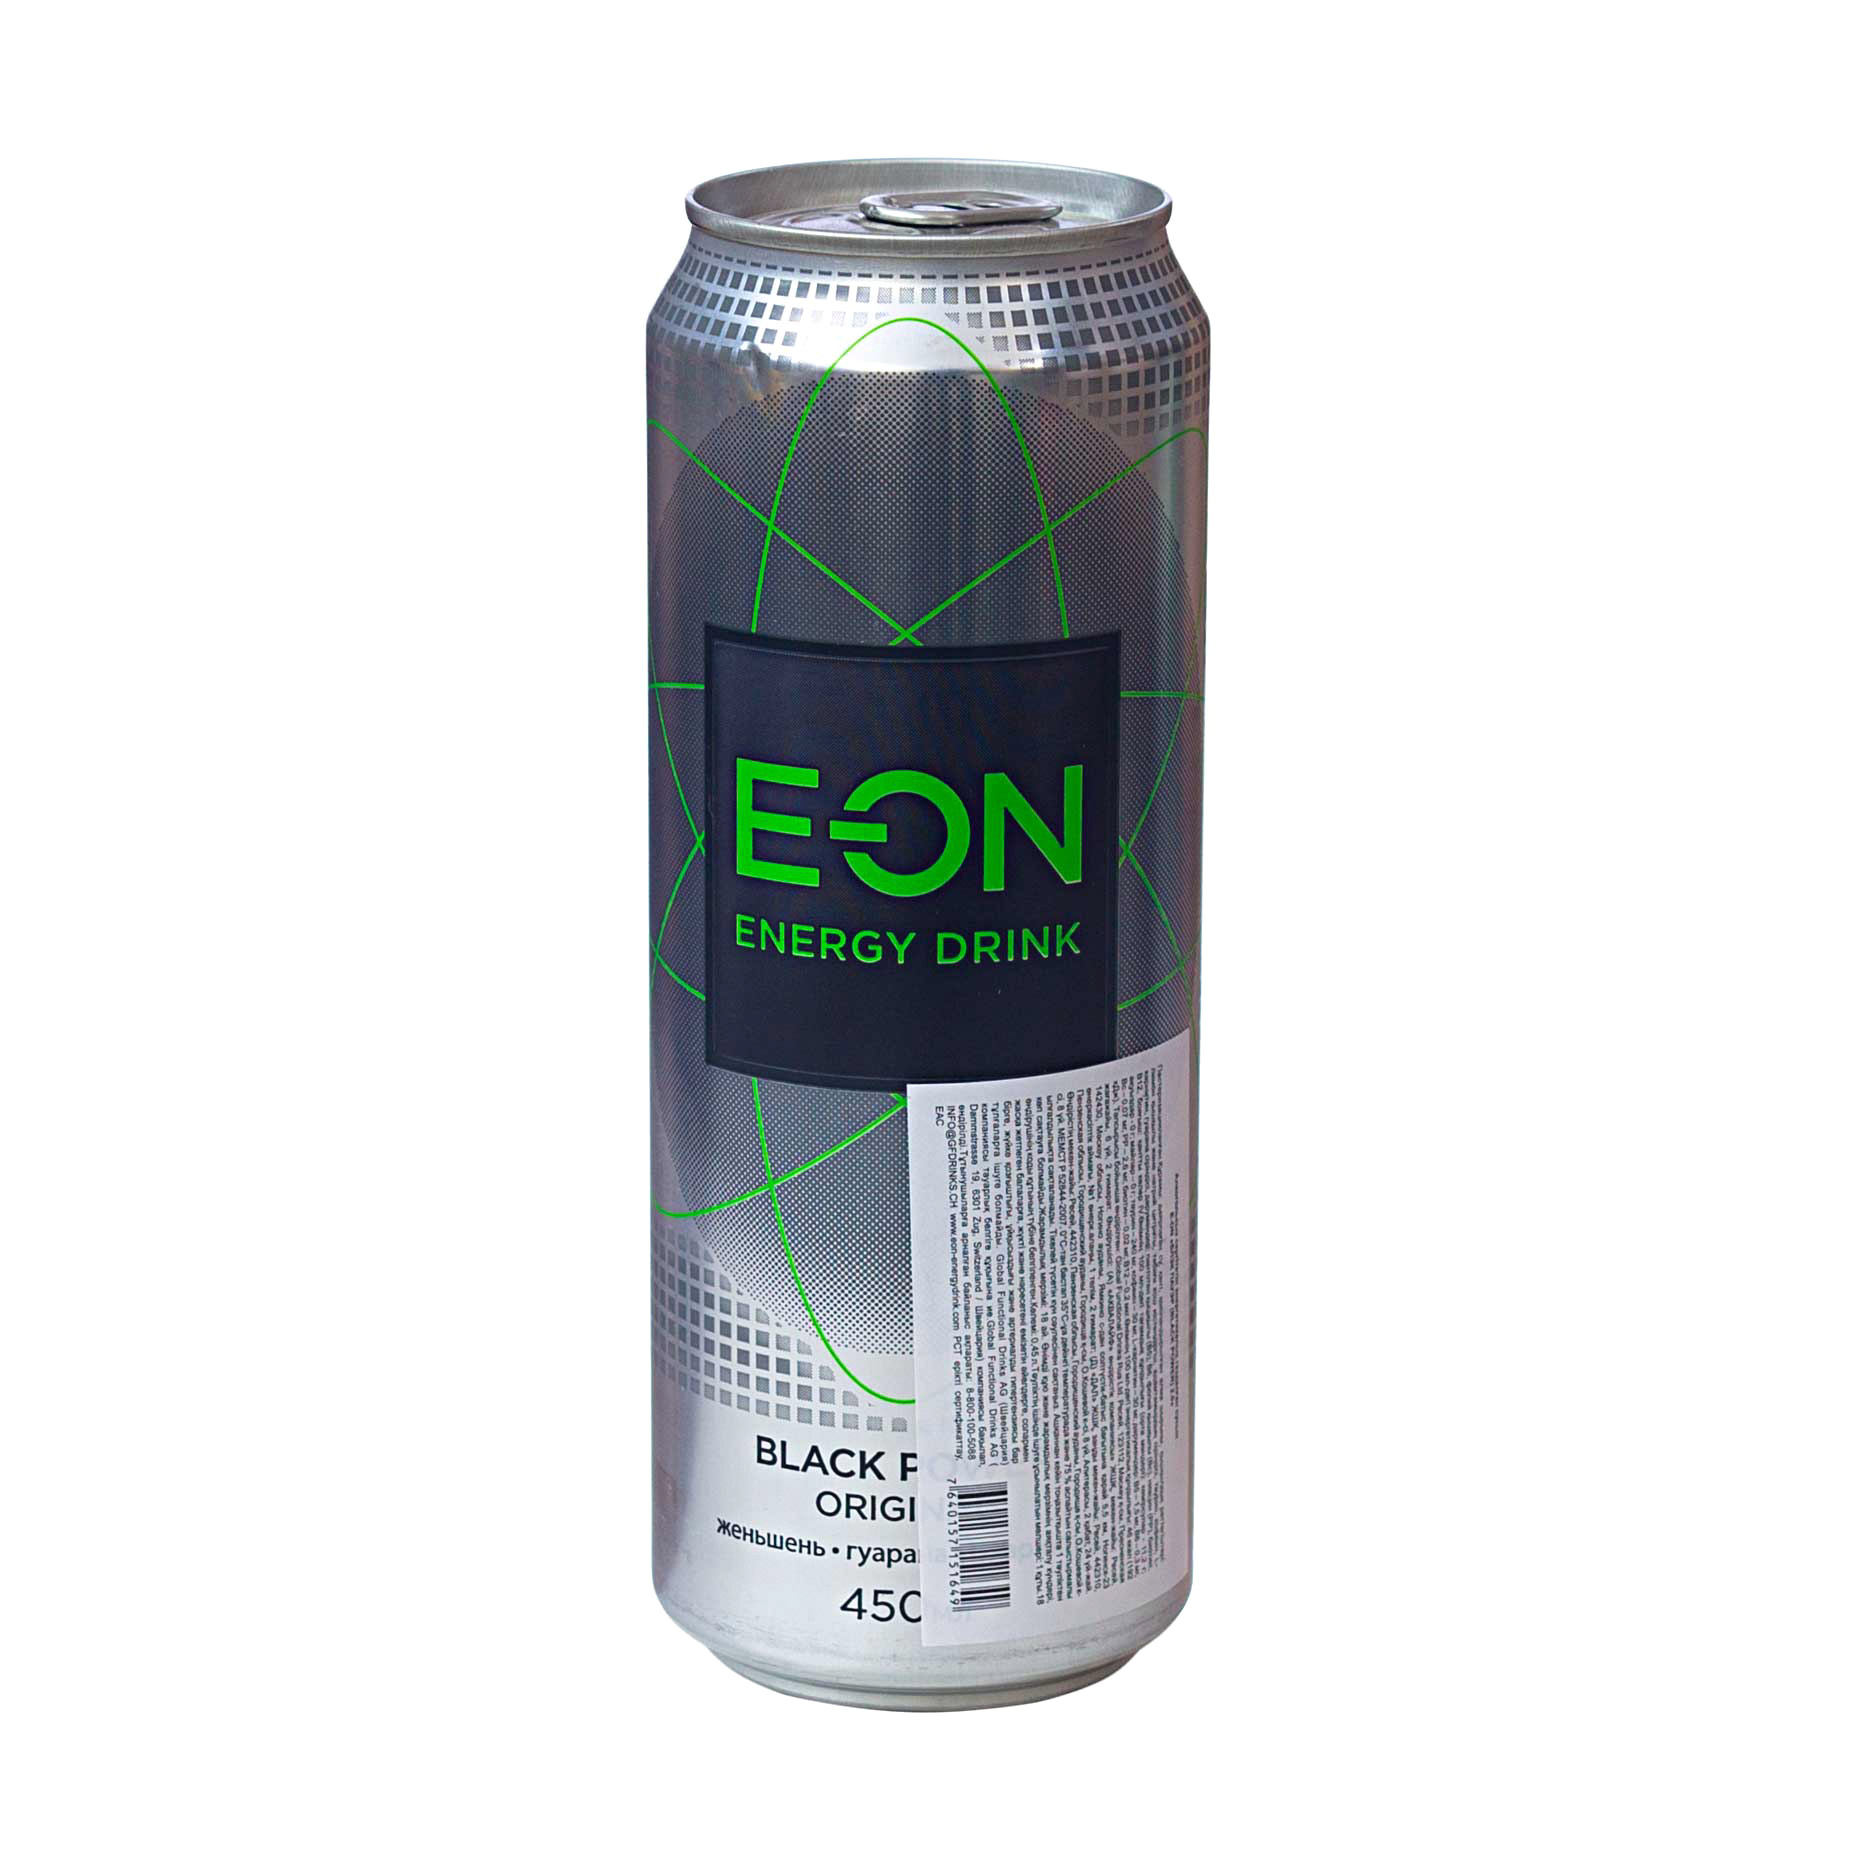 Напиток энергетический E-On Power Original 450 мл напиток волчок cola 0 33 литра газ ж б 24 шт в уп